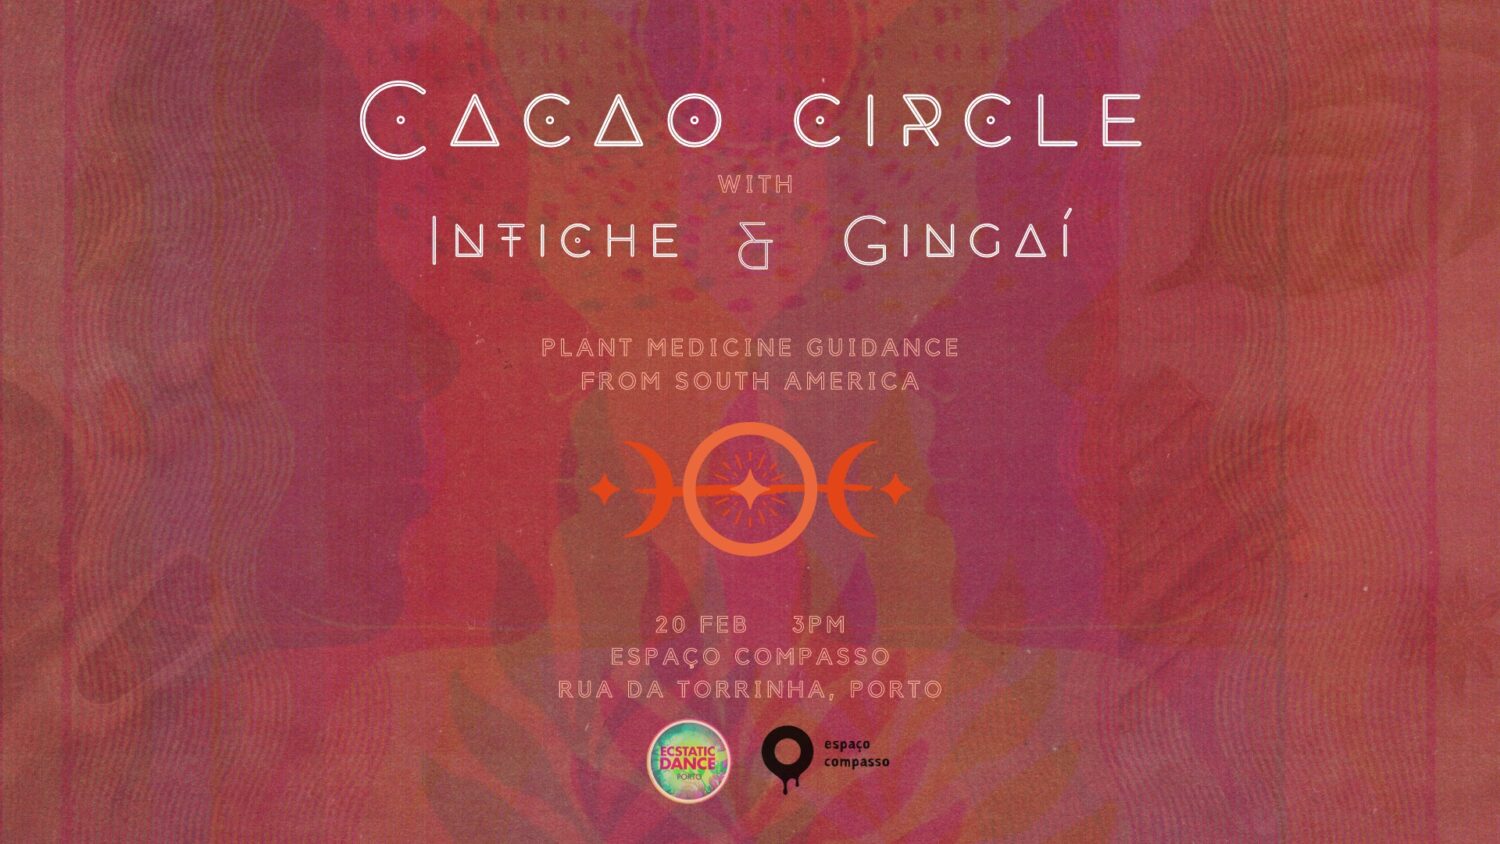 Cacao circle - Espaço Compasso